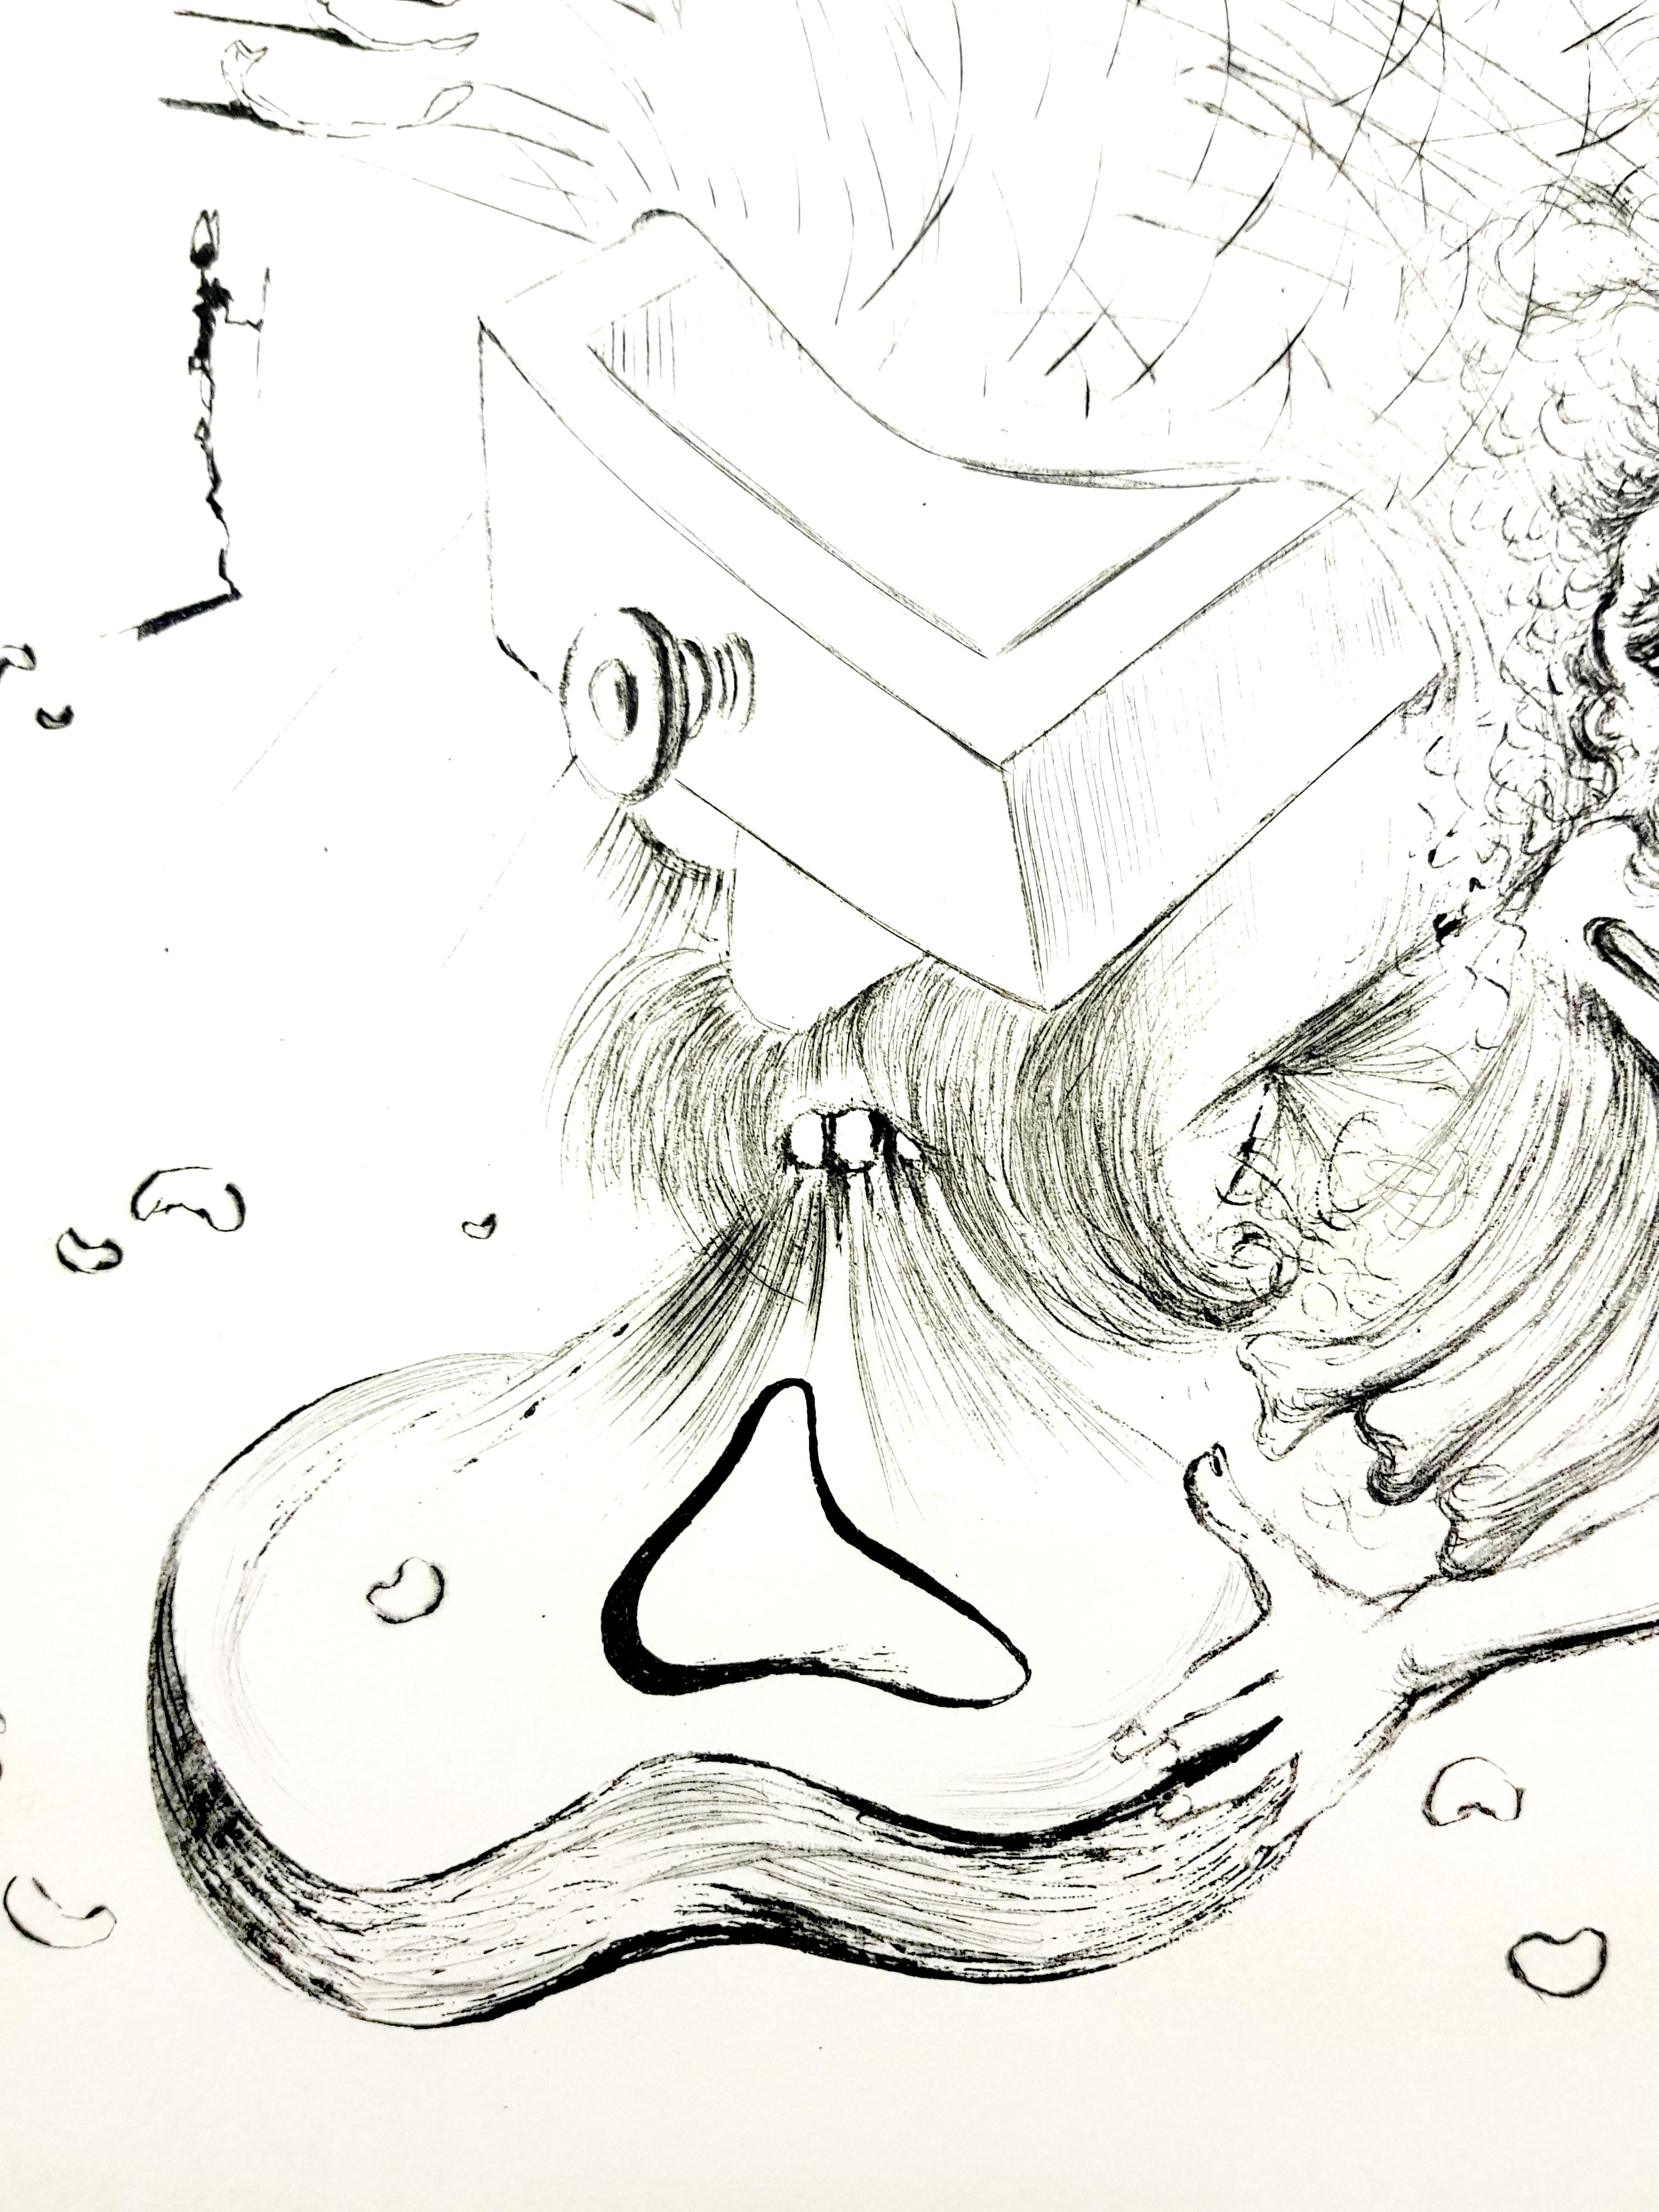 Salvador Dali - La plage - Gravure originale
Dimensions : 38 x 28 cm
Edition : 235
1967
signature en relief
Sur Vellum d'Arches
Références : Champ 67-10 (p. 34-35)